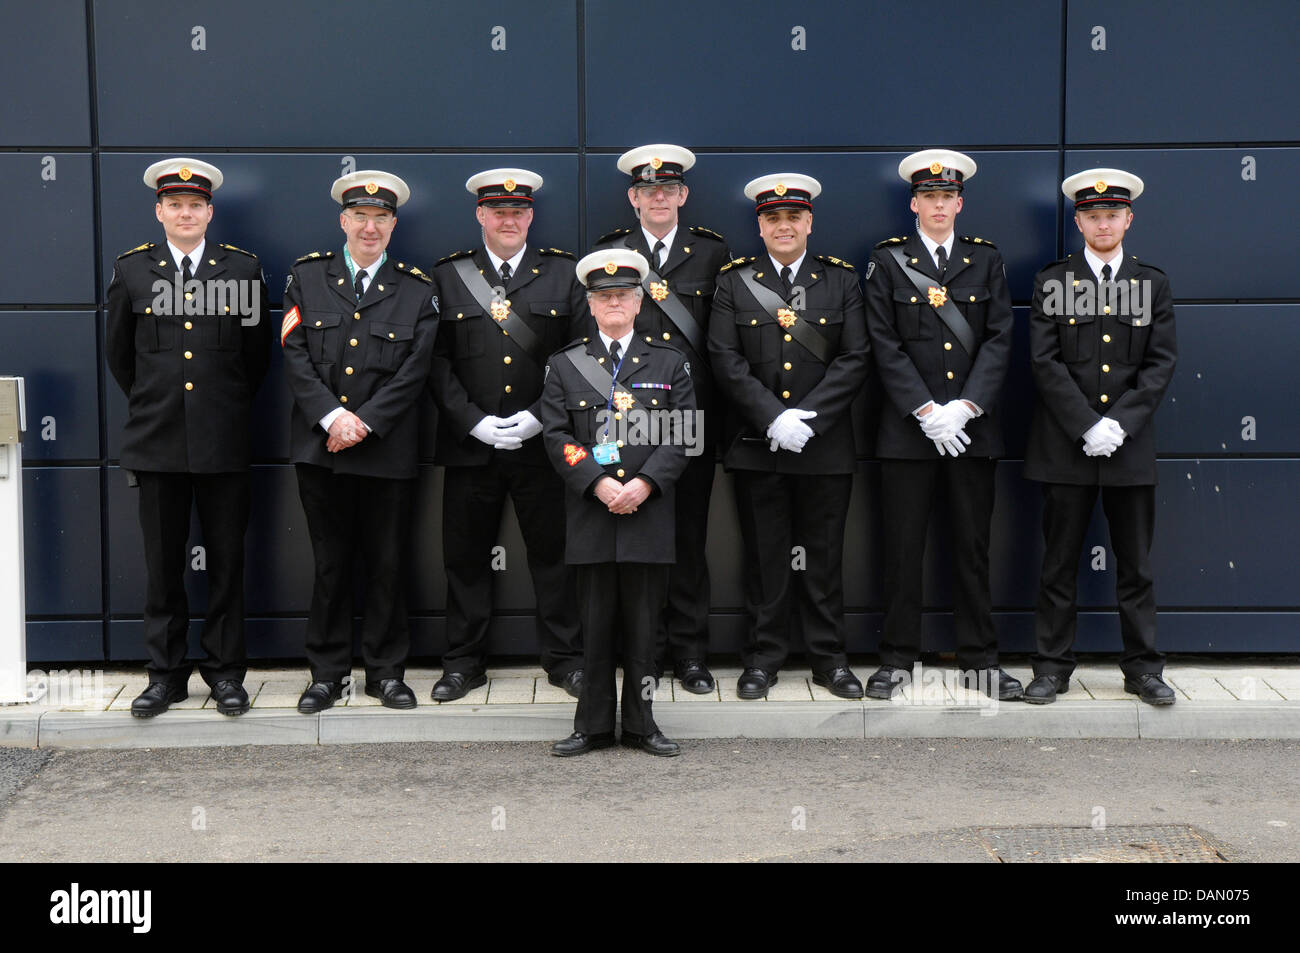 Acht uniformierte Sicherheitsleute posieren für ein Gruppenfoto Stockfoto